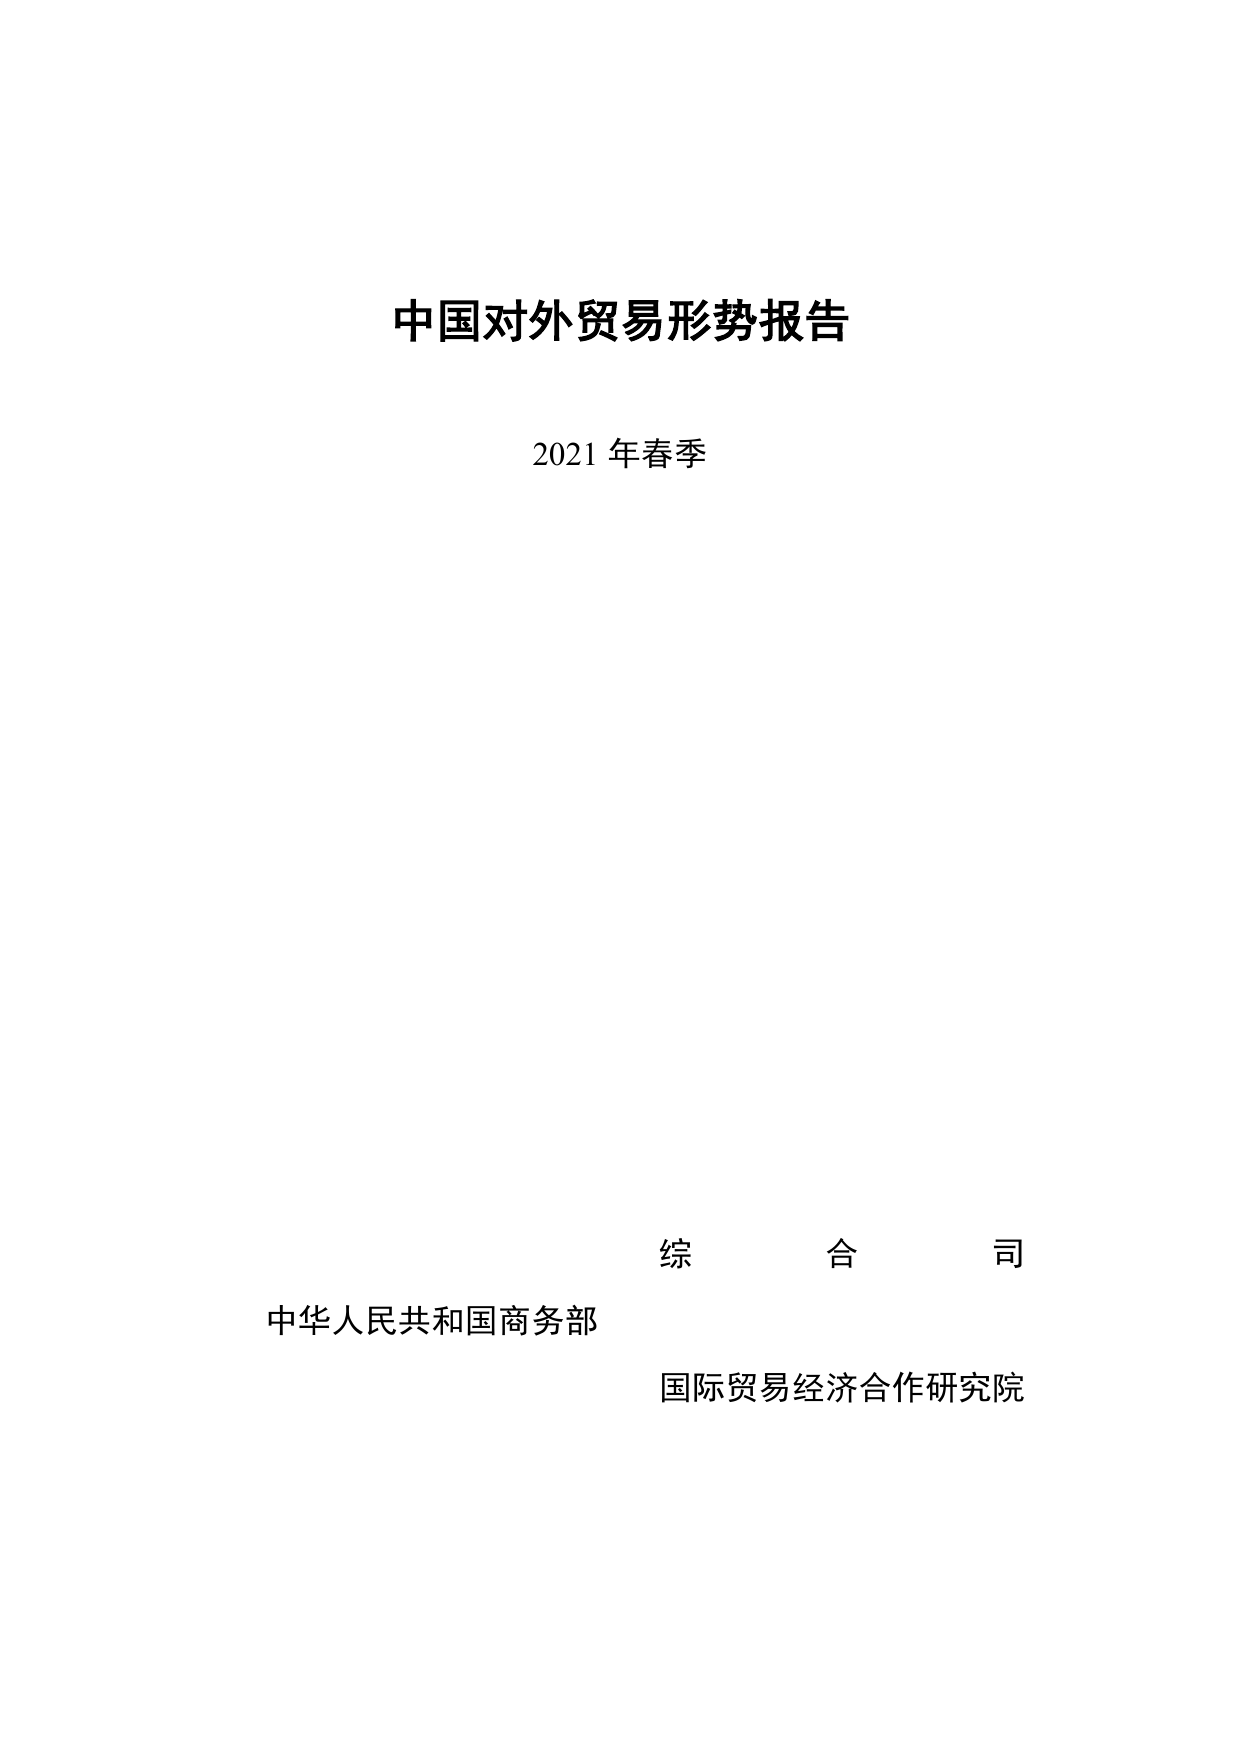 中国对外贸易形势报告（2021年春季）-商务部-2021-88页